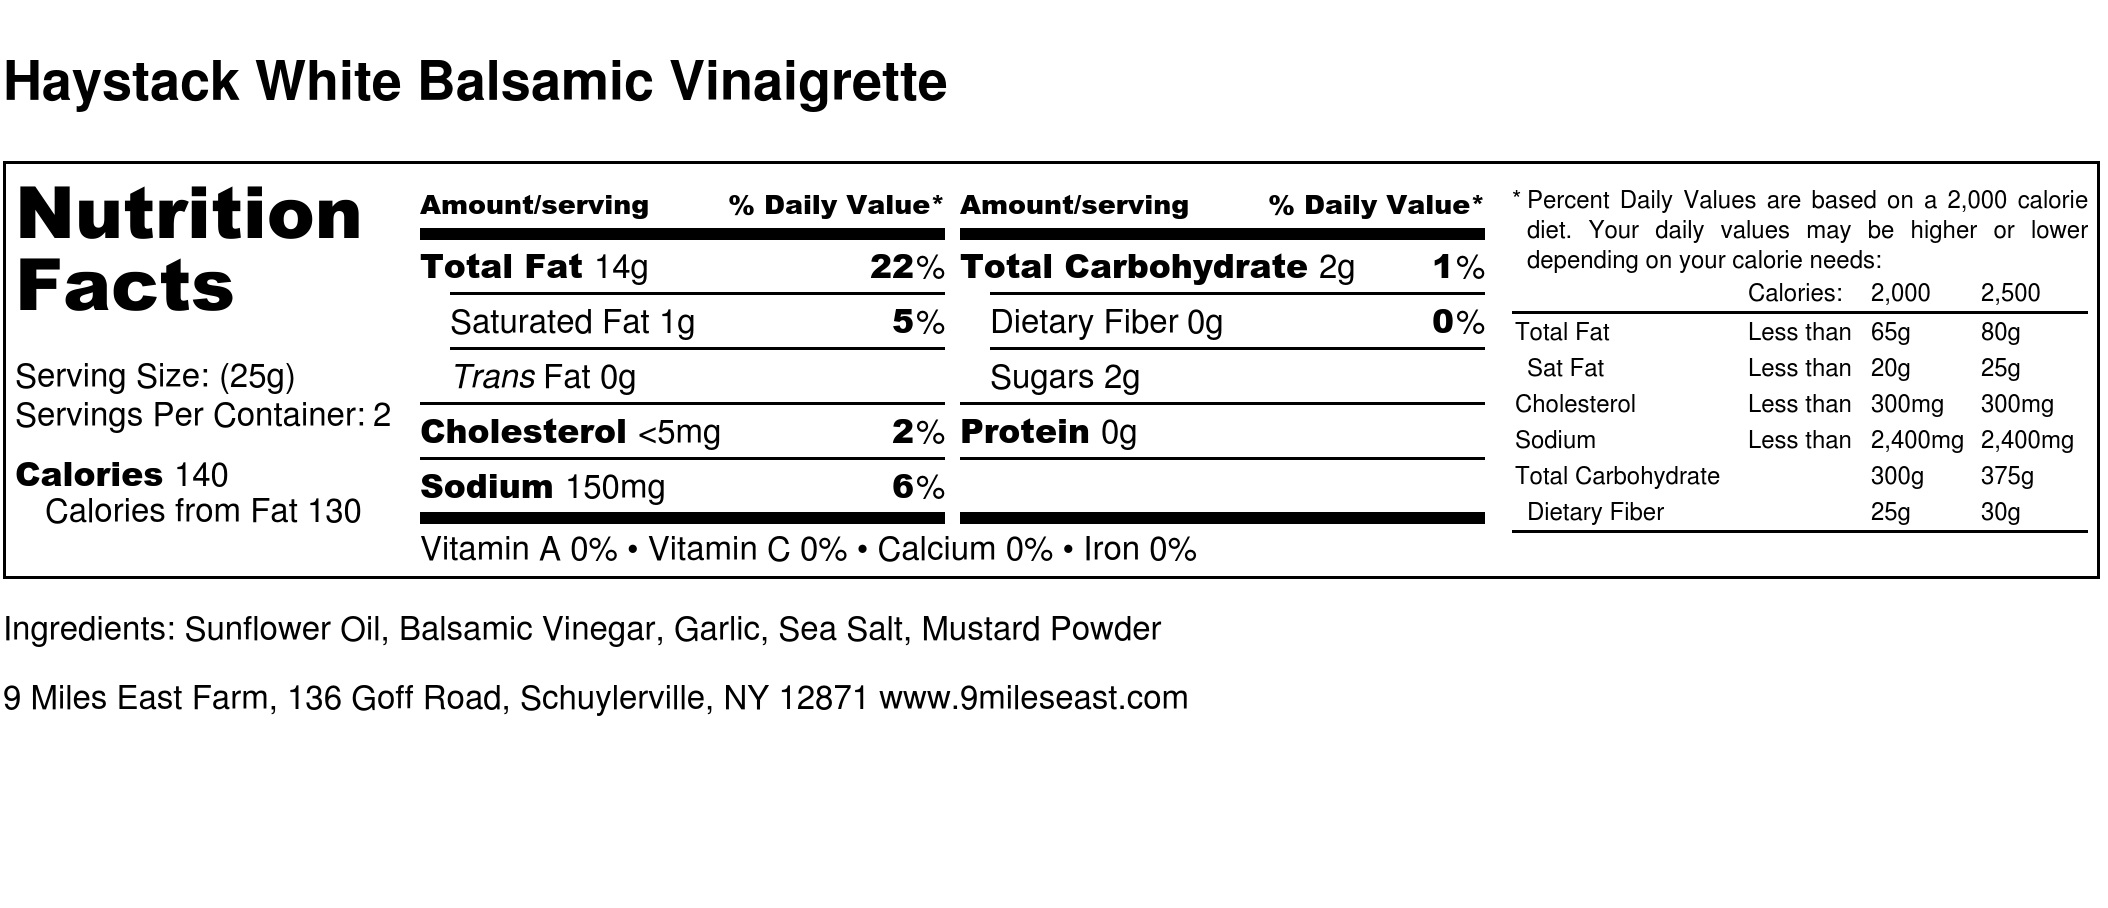 Haystack White Balsamic Vinaigrette - Nutrition Label.jpg